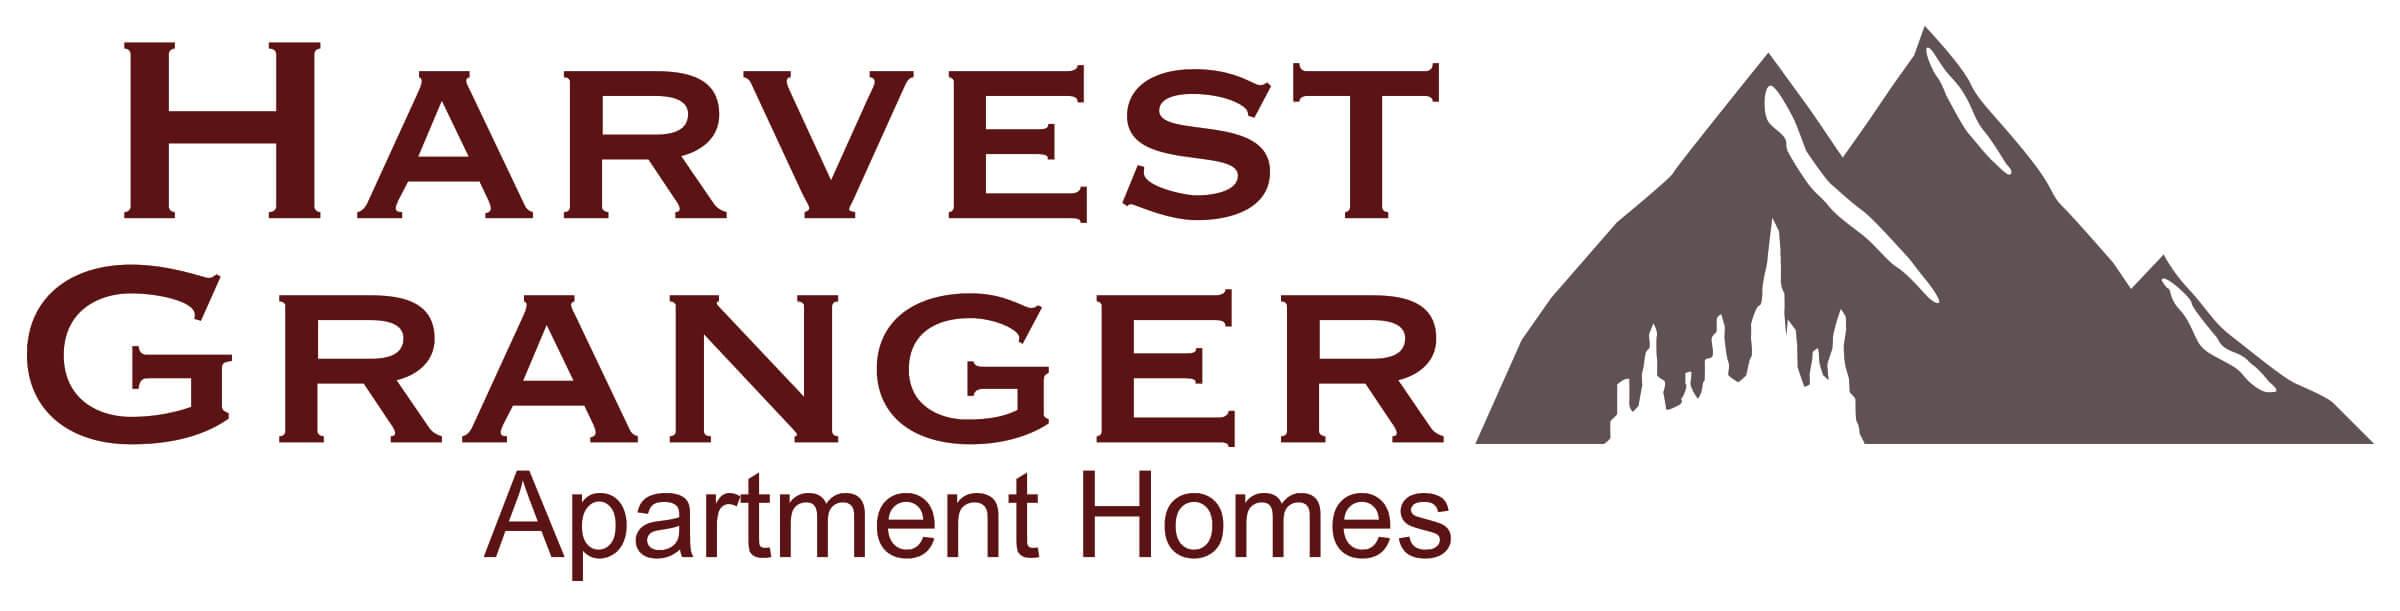 Granger Logo - Apartments in Billings, MT Granger Apartments in Billings, MT